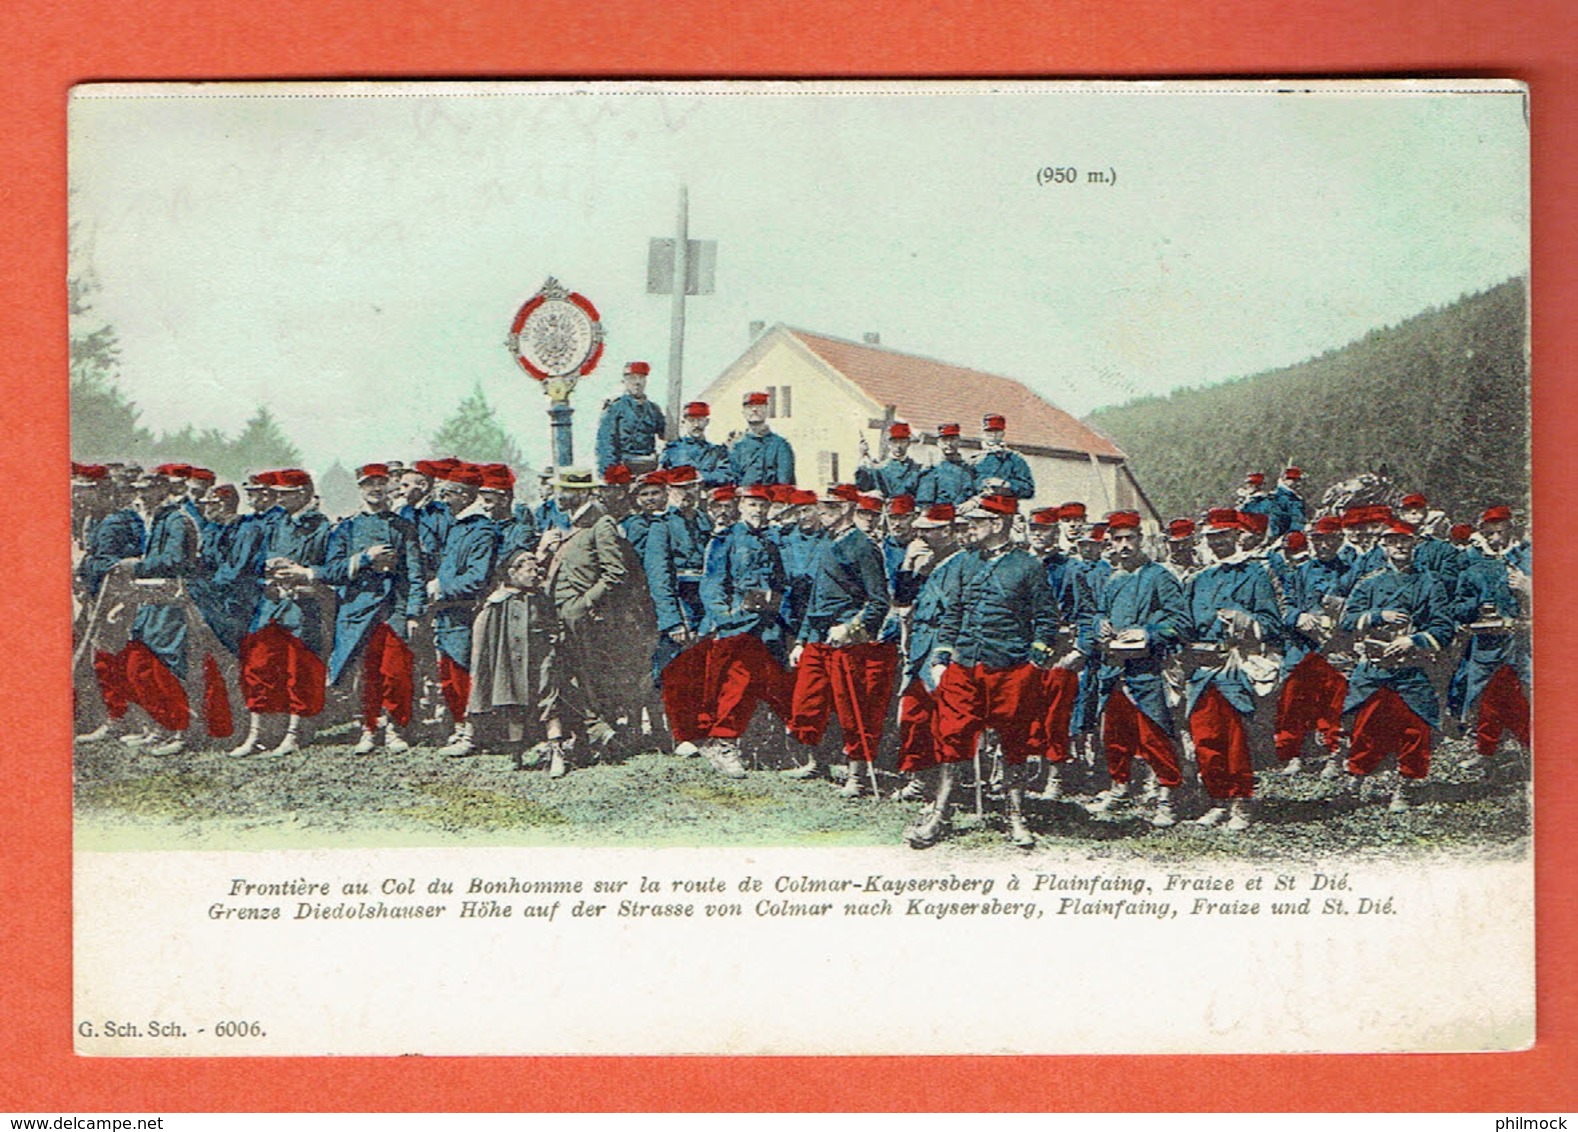 200 P - Frontière Au Col Du Bonhomme - Colmar-Kayzersberg A Plainfaing,Fraize Et St-Dié - Ambulant Metz-Frankfurt 1904 - Lorraine